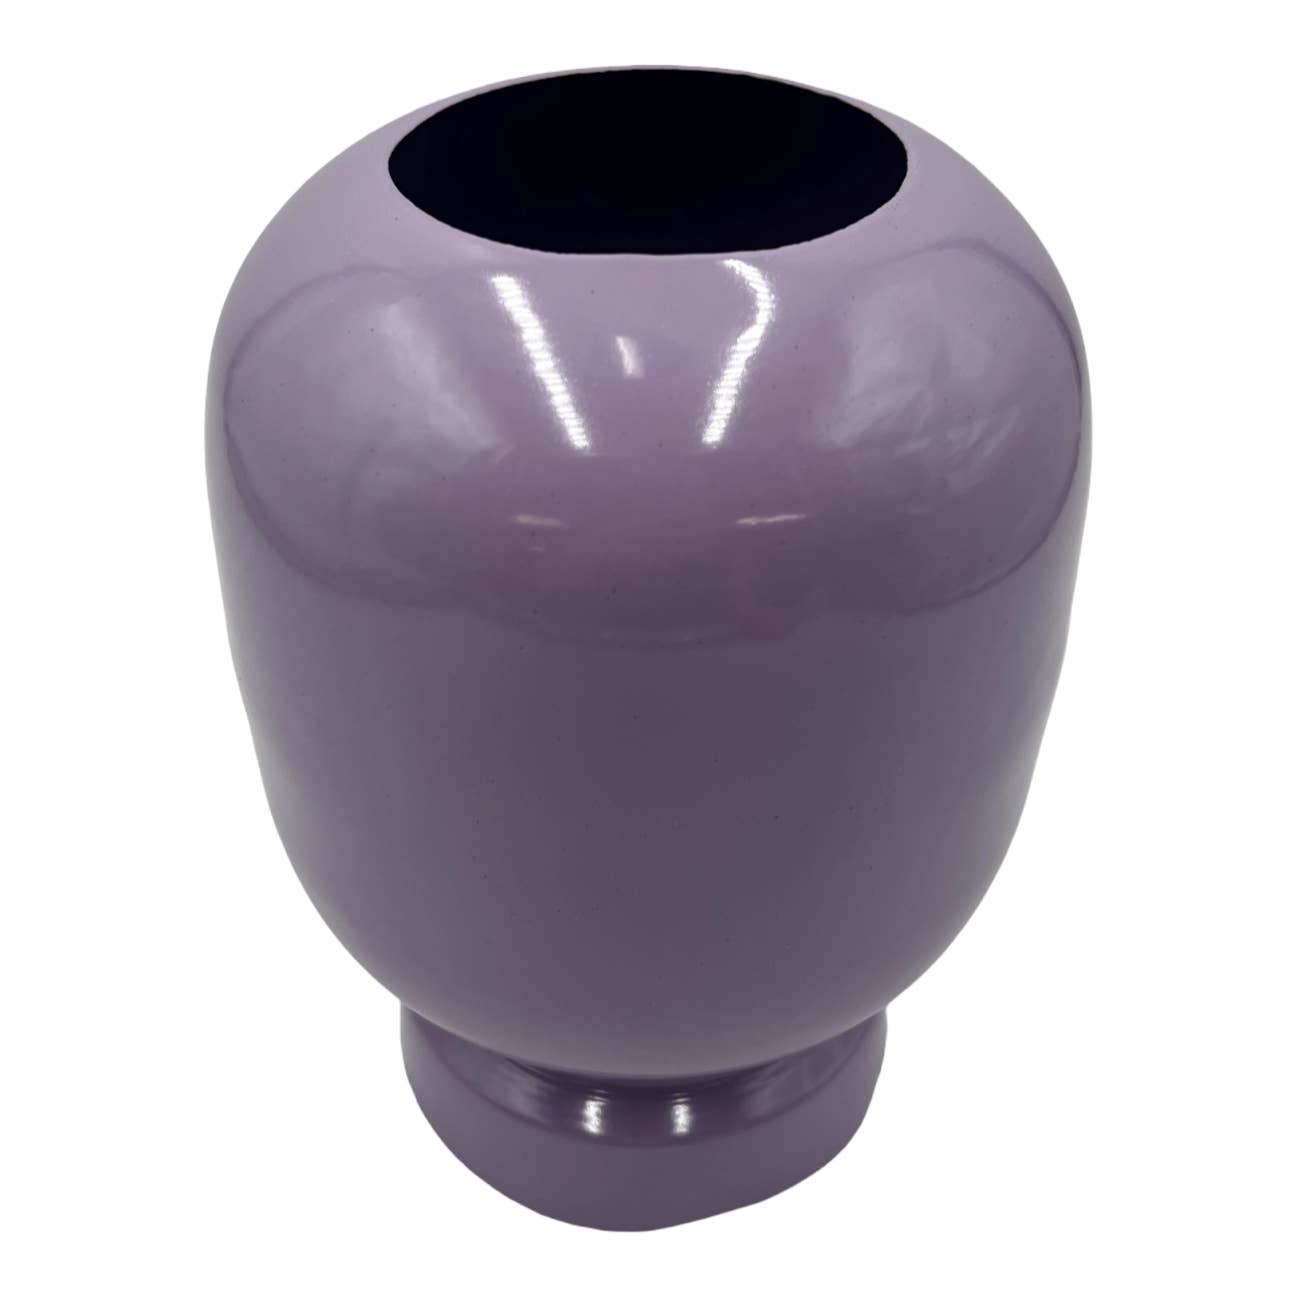 8" High Iron Round Planter Vase: Lavender